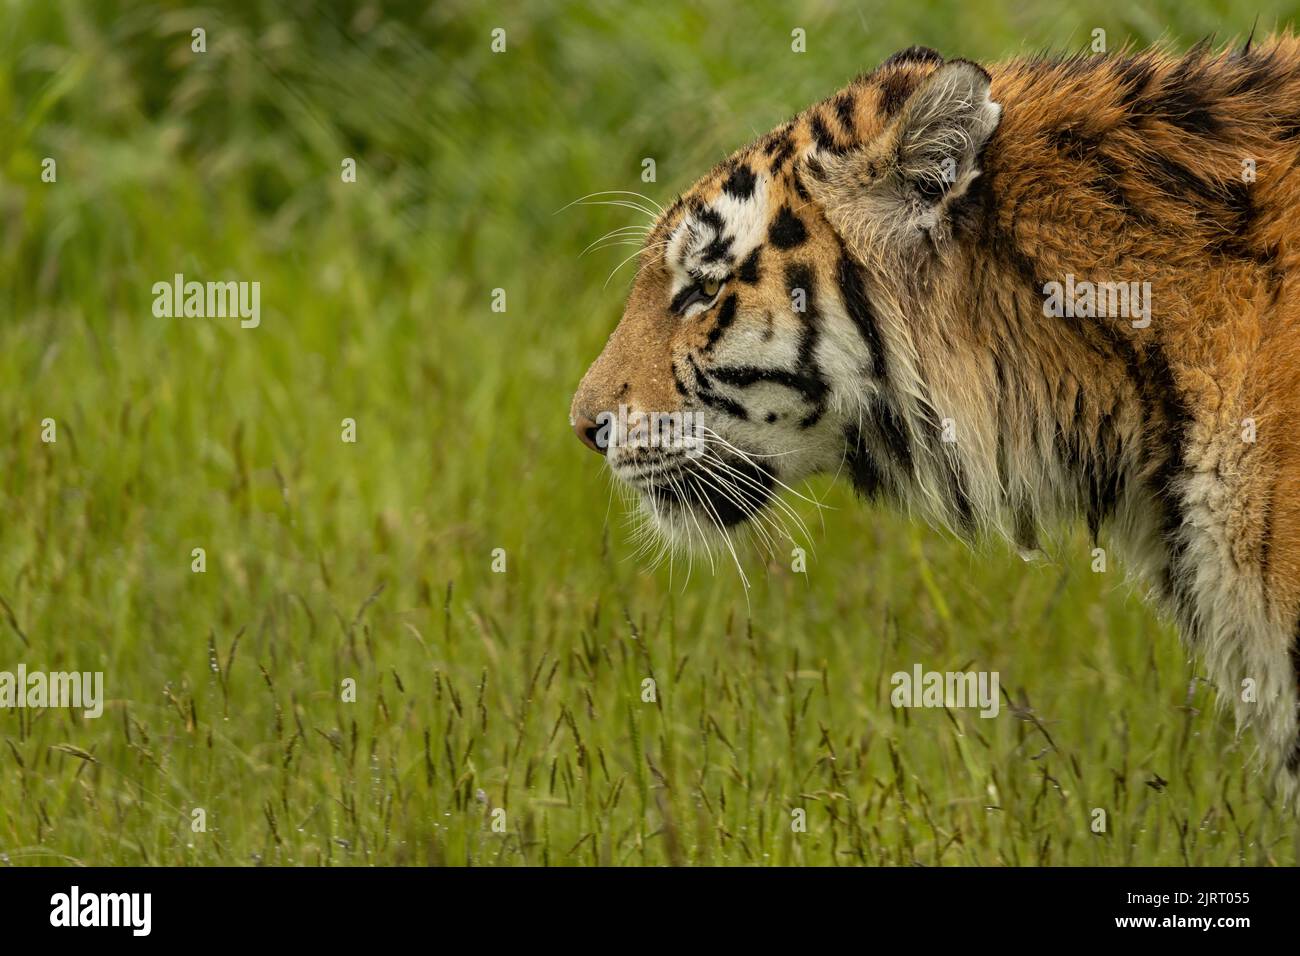 Un primo piano di una tigre di amur che guarda nella telecamera Foto Stock